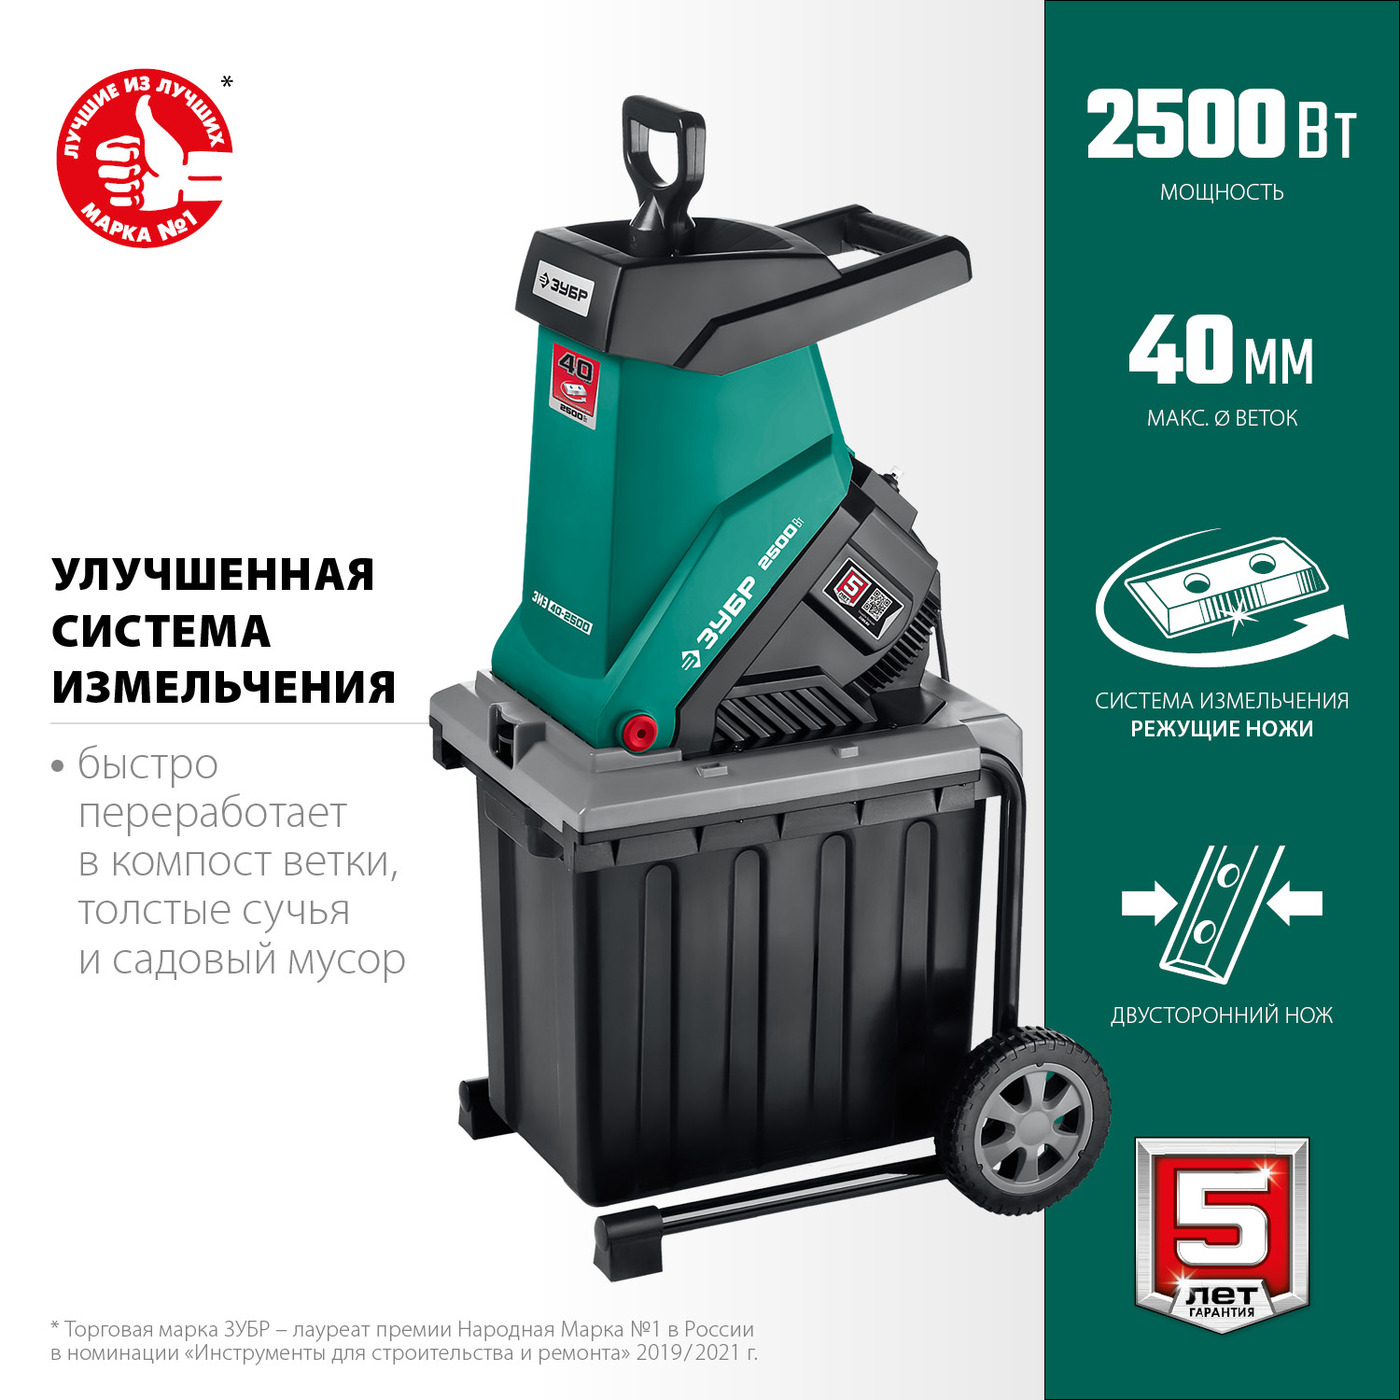 ЗУБР 2500 Вт электрический садовый измельчитель (ЗИЭ-40-2500) ком